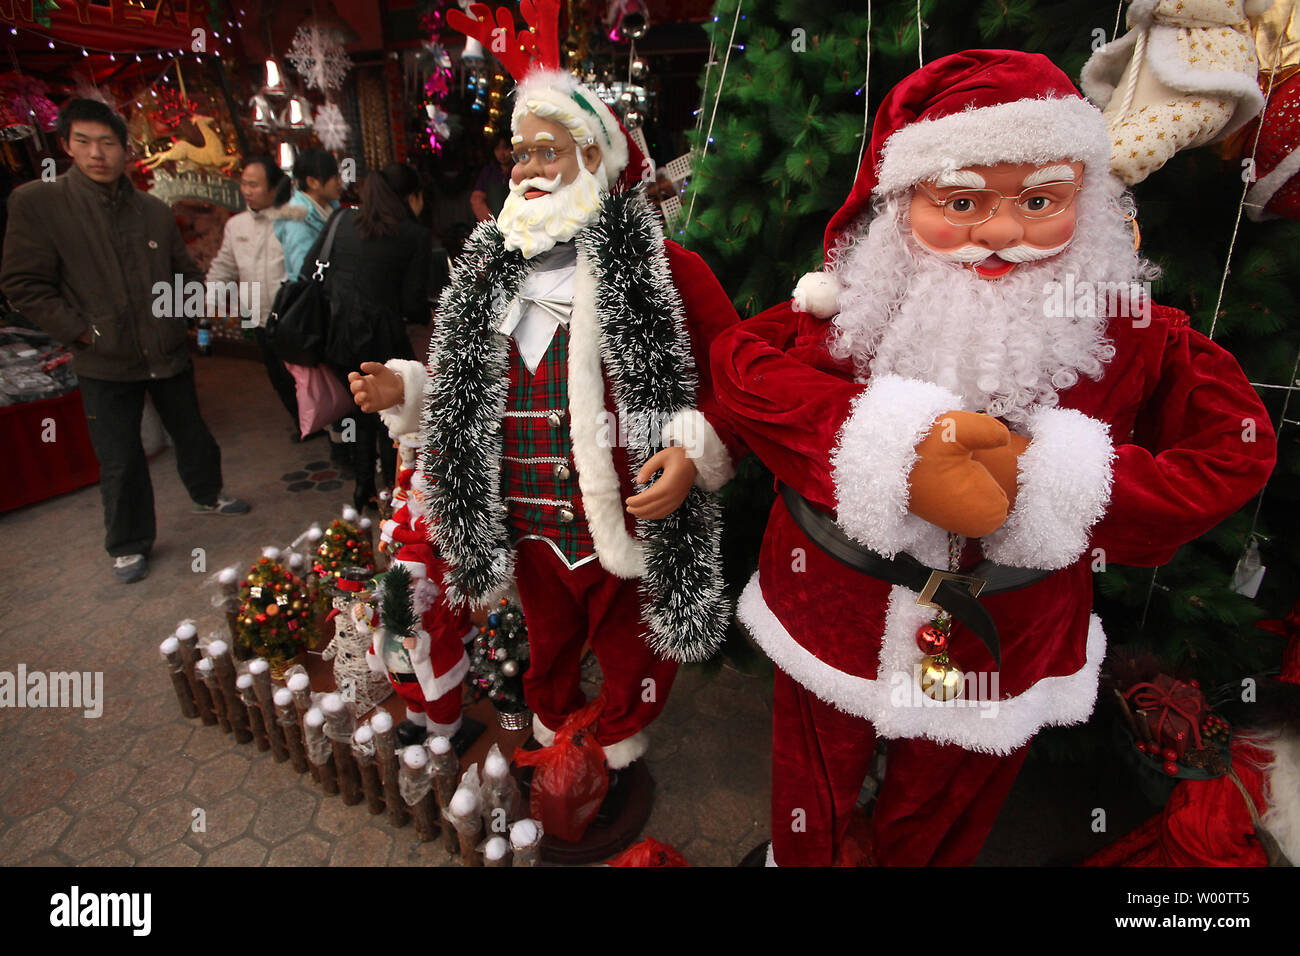 Weihnachten Dekorationen und lebensgroße Santa's sind an einer Shopping Mall in der Leitung bis zu Weihnachten in Peking am 7. Dezember 2010 verkauft. Wie Chinas Wirtschaft boomt und inländischen Konsum ist so hoch, Chinesen, die Weihnachten nicht so viel aus historischen Gründen, aber als ein guter Grund zu kaufen. UPI/Stephen Rasierer Stockfoto